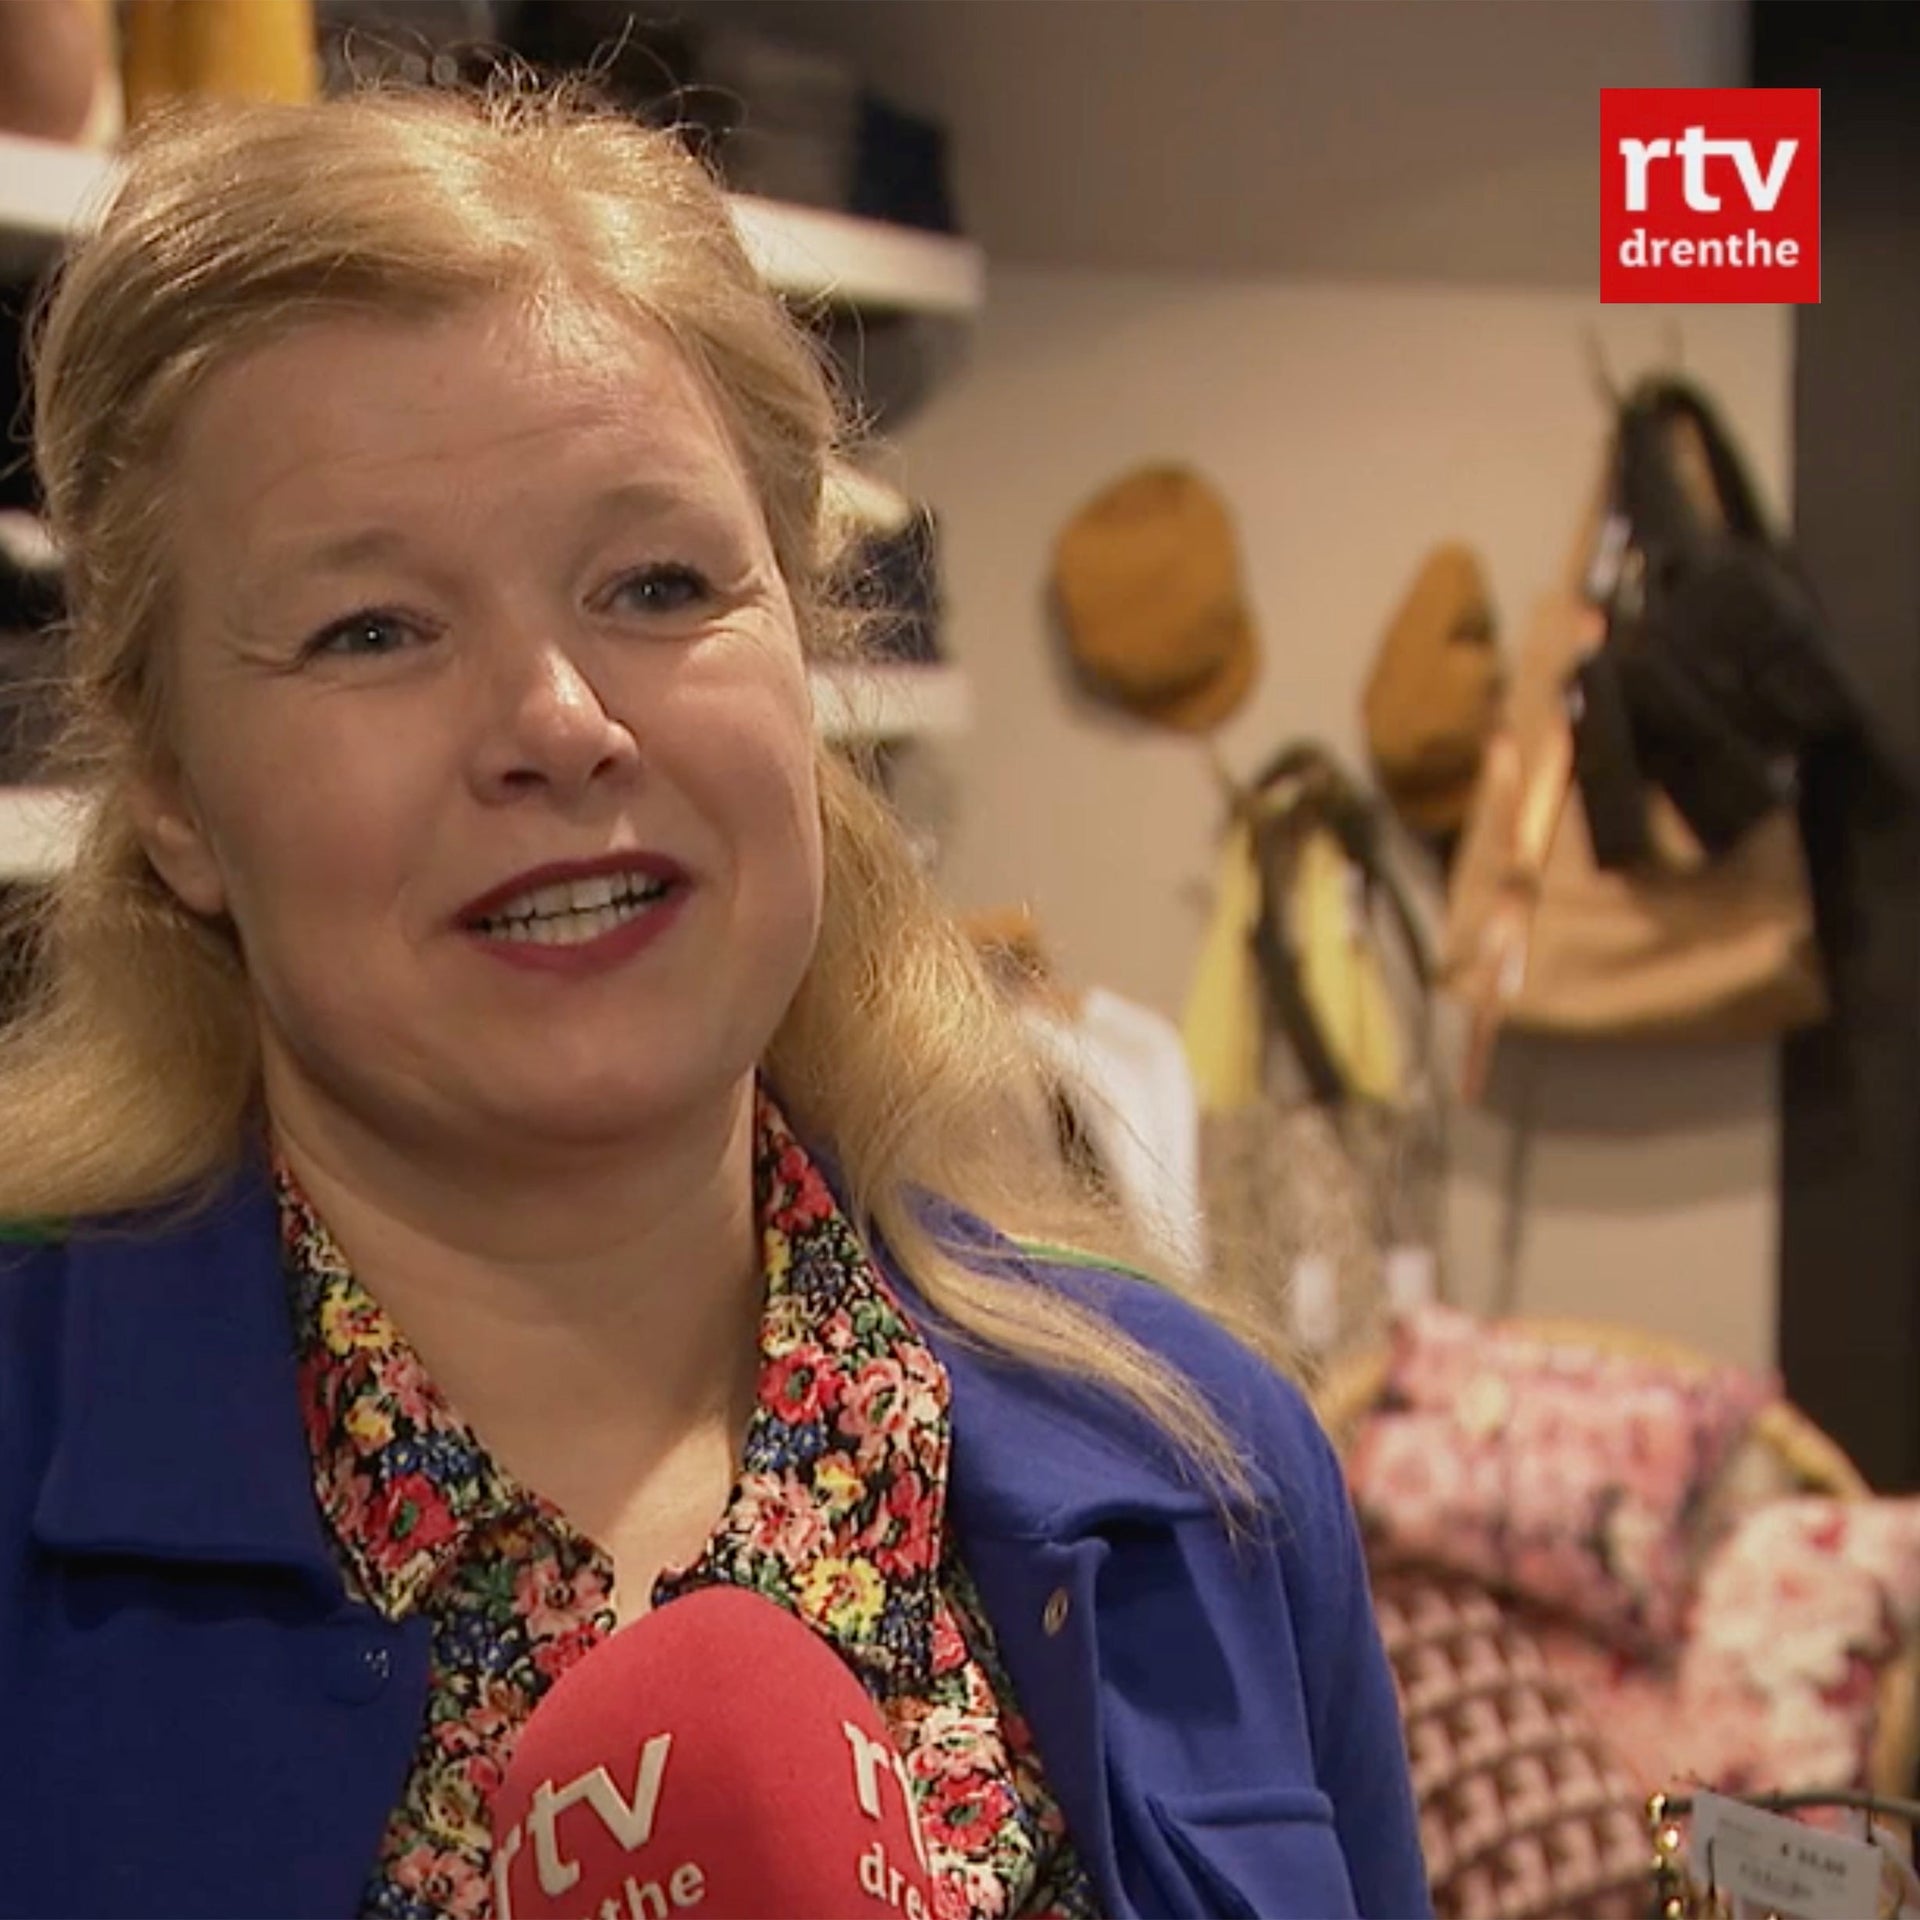 RTV Drenthe bij LEEF in de winkel, hoe leuk